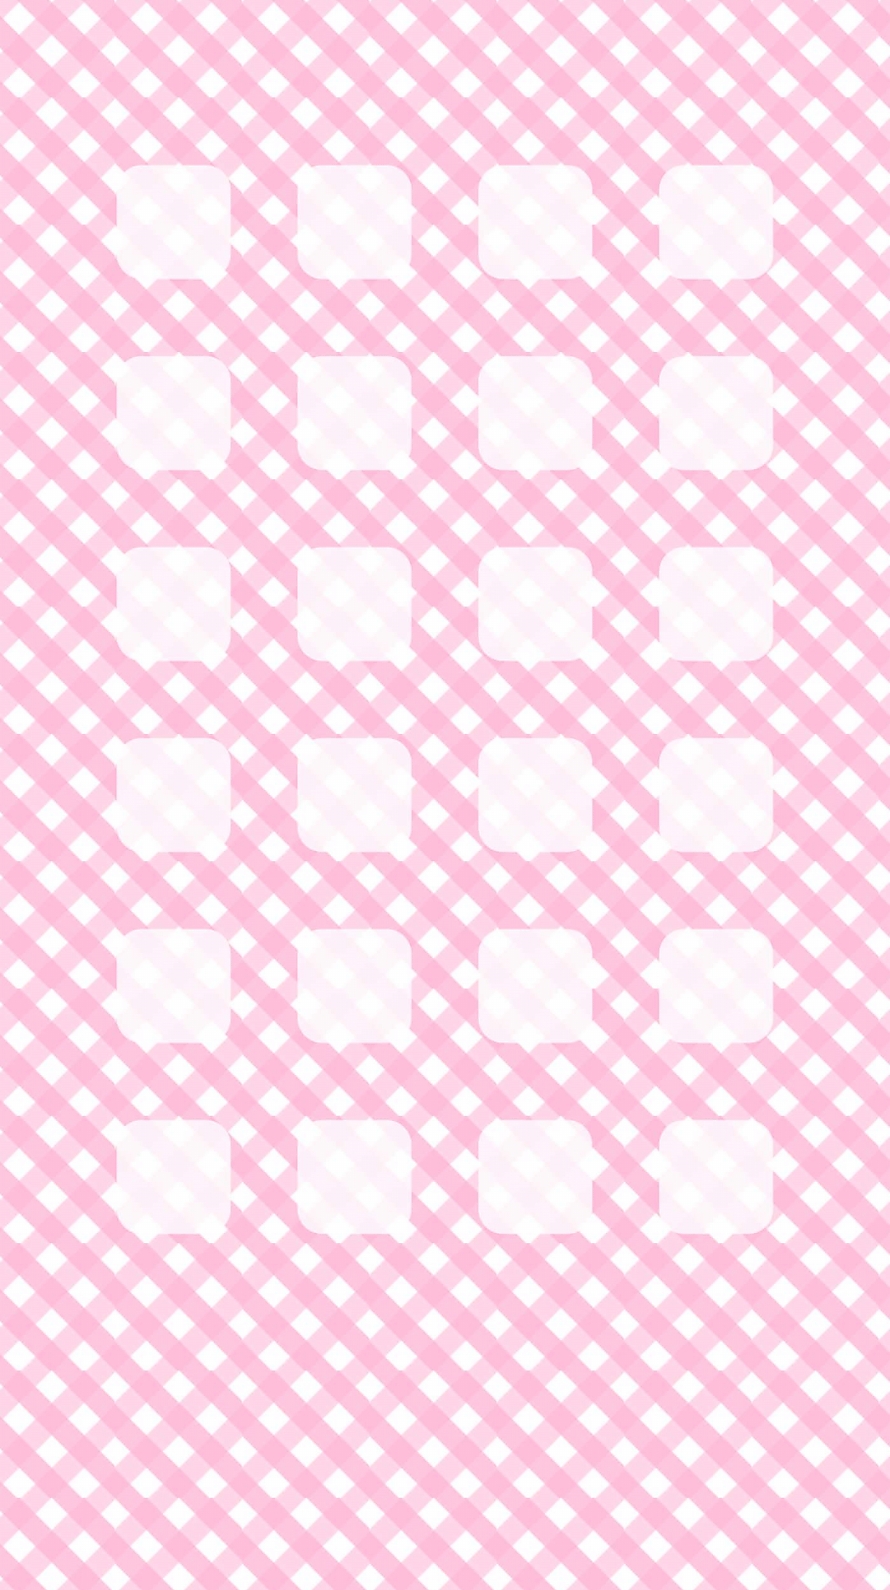 パステルピンク 格子状 iPhone6壁紙